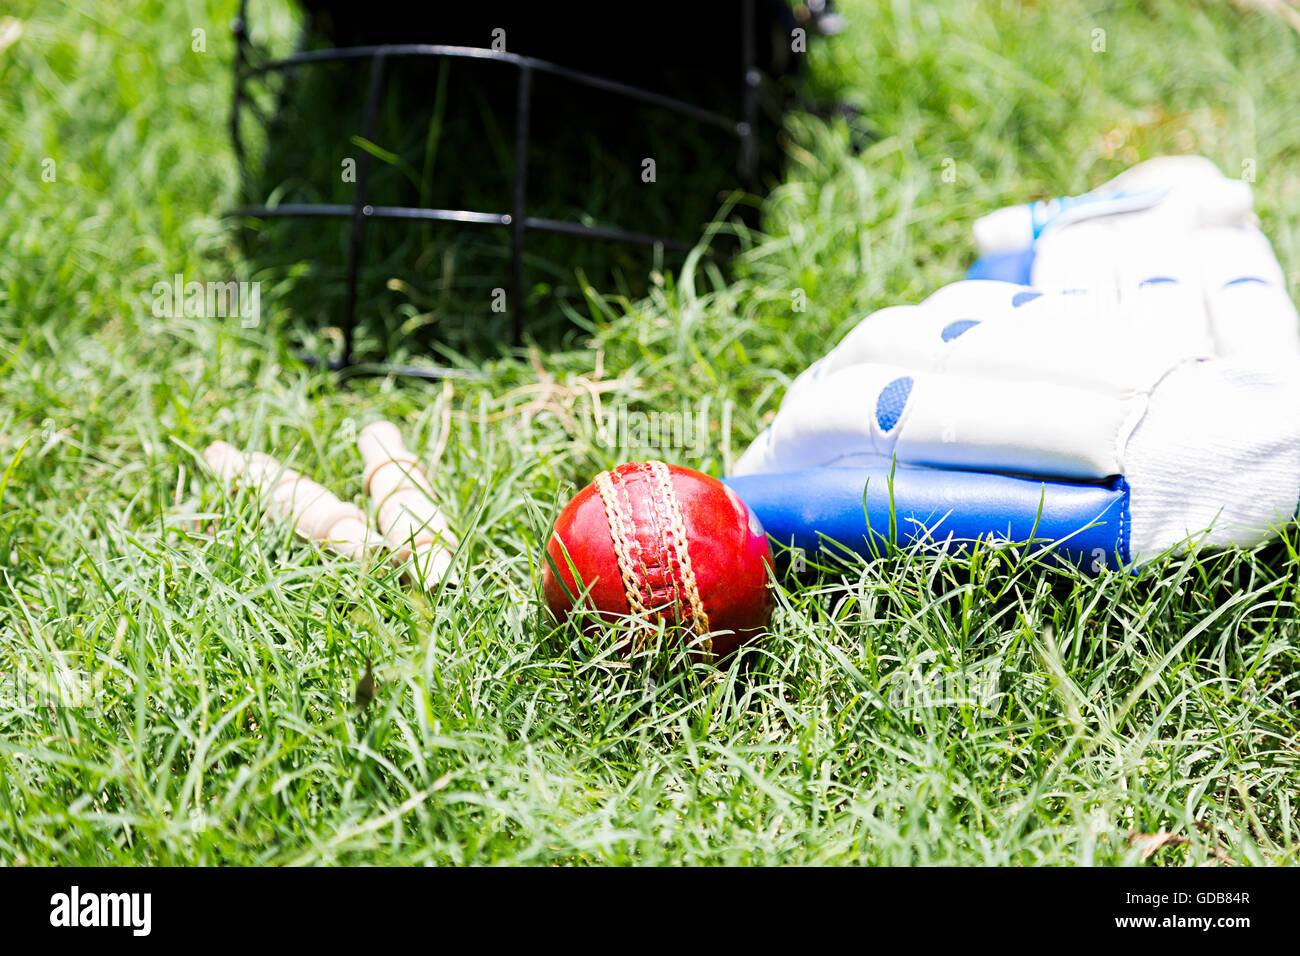 Spielplatz gras Cricket equipment Kugel, Kautionen, Handschuhe, Helm Stockfoto